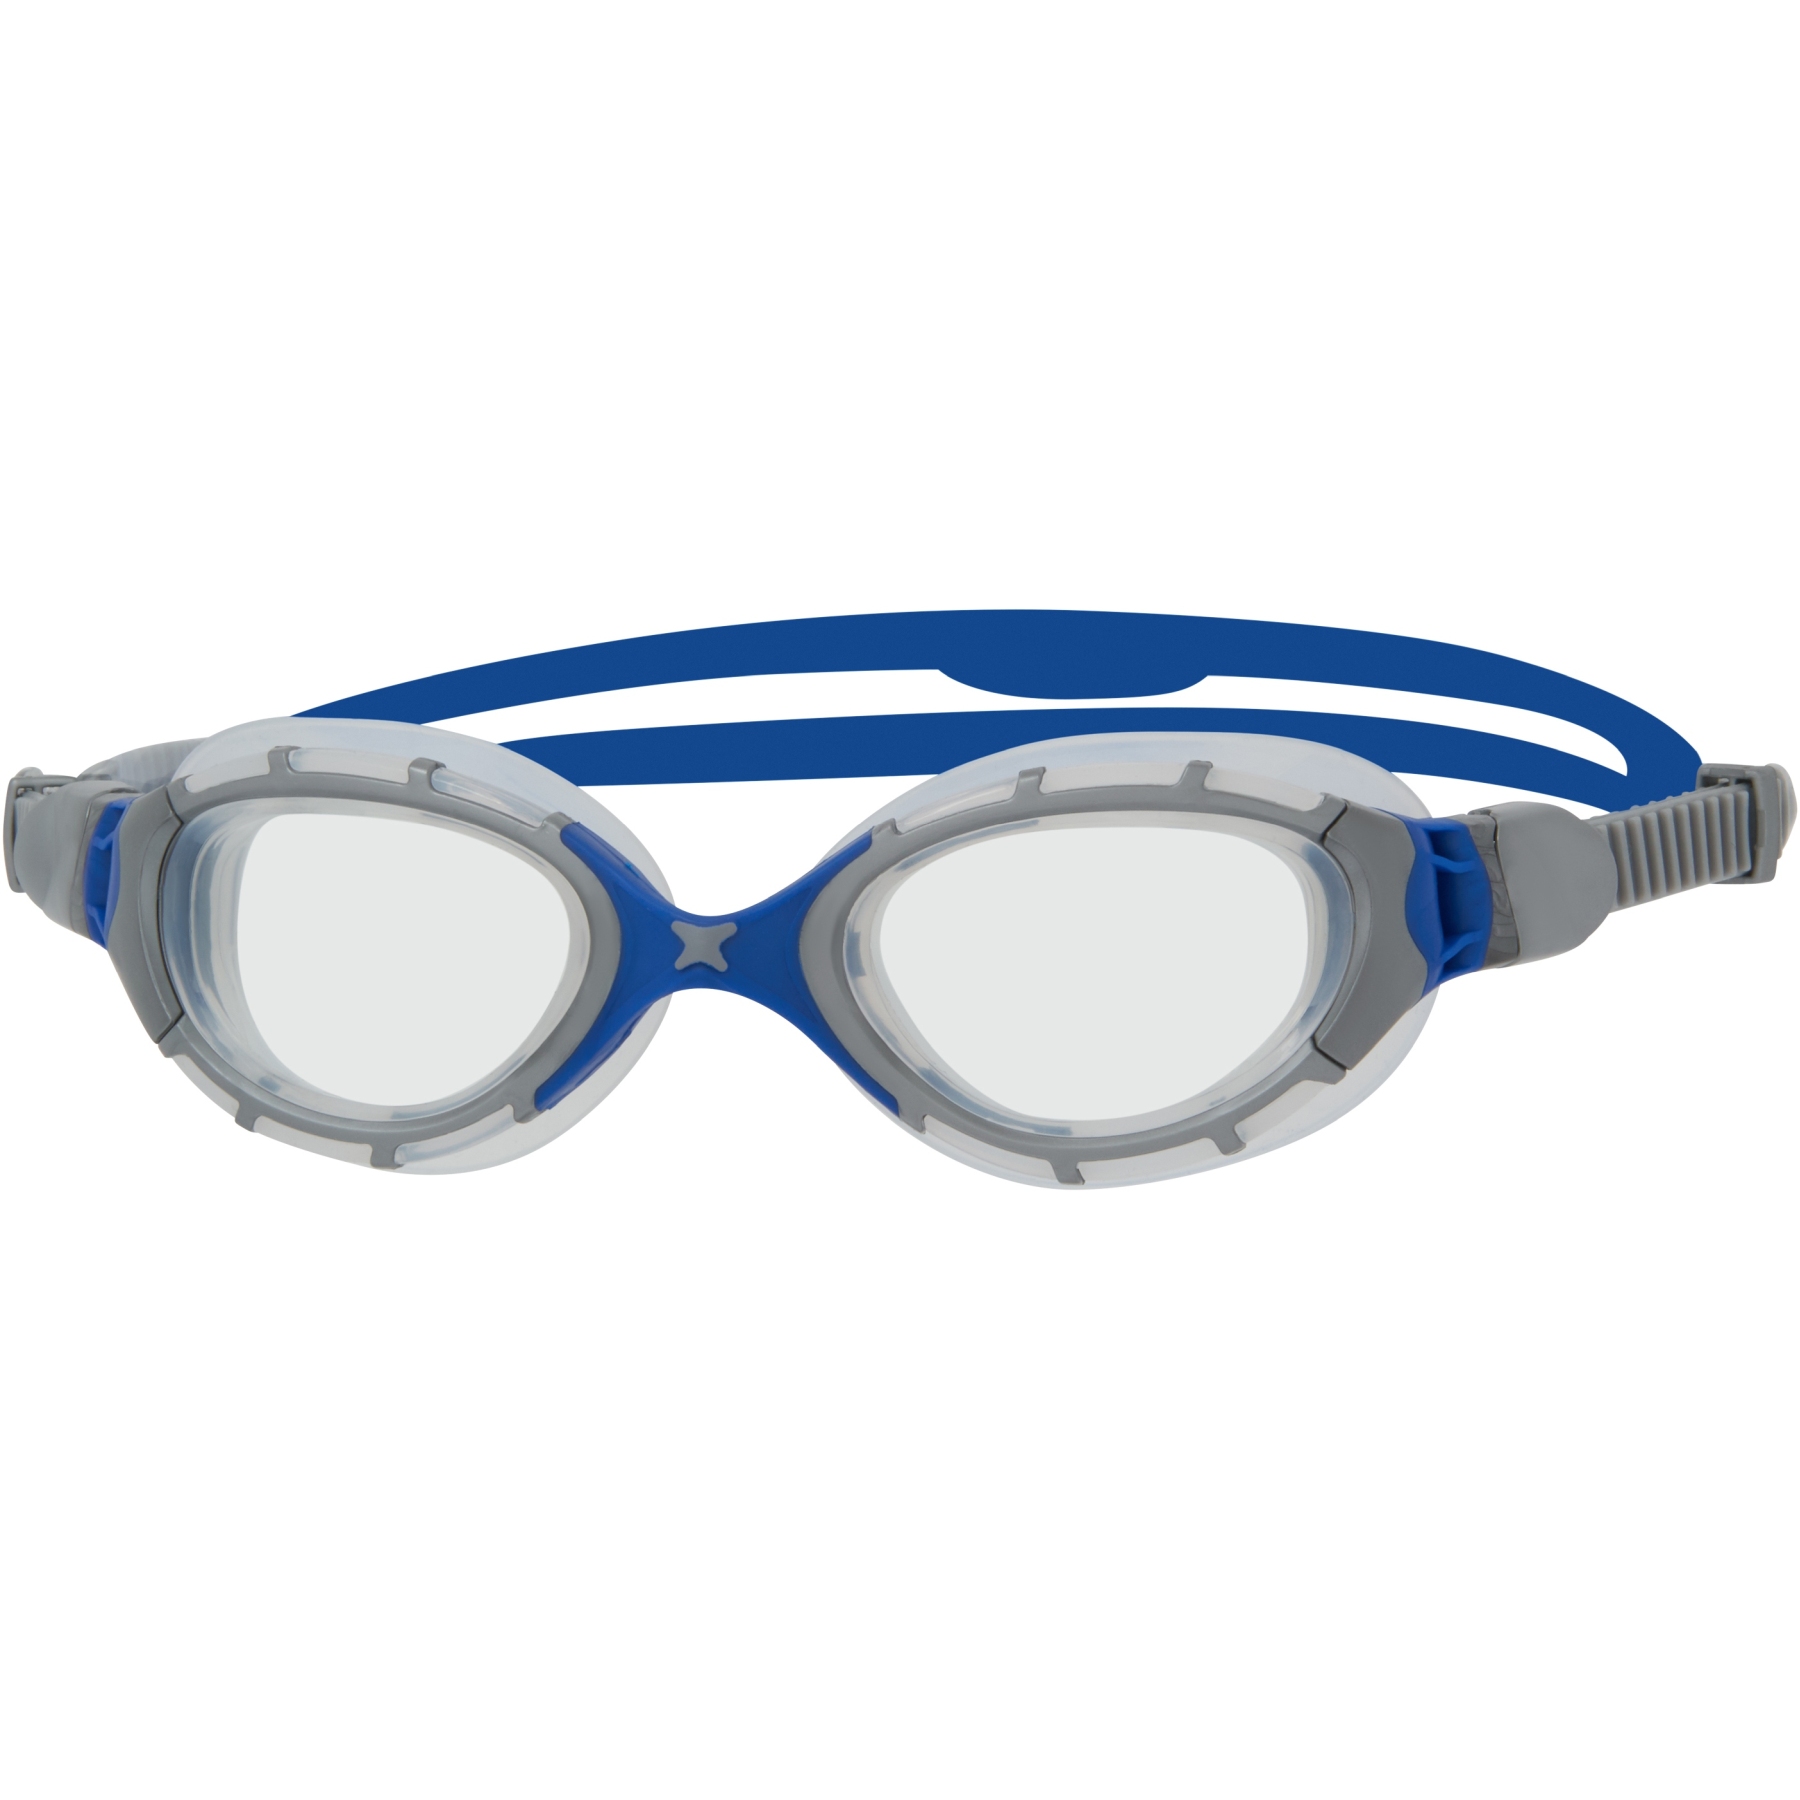 Foto de Zoggs Predator Flex Gafas de natación - gris/azul/claro